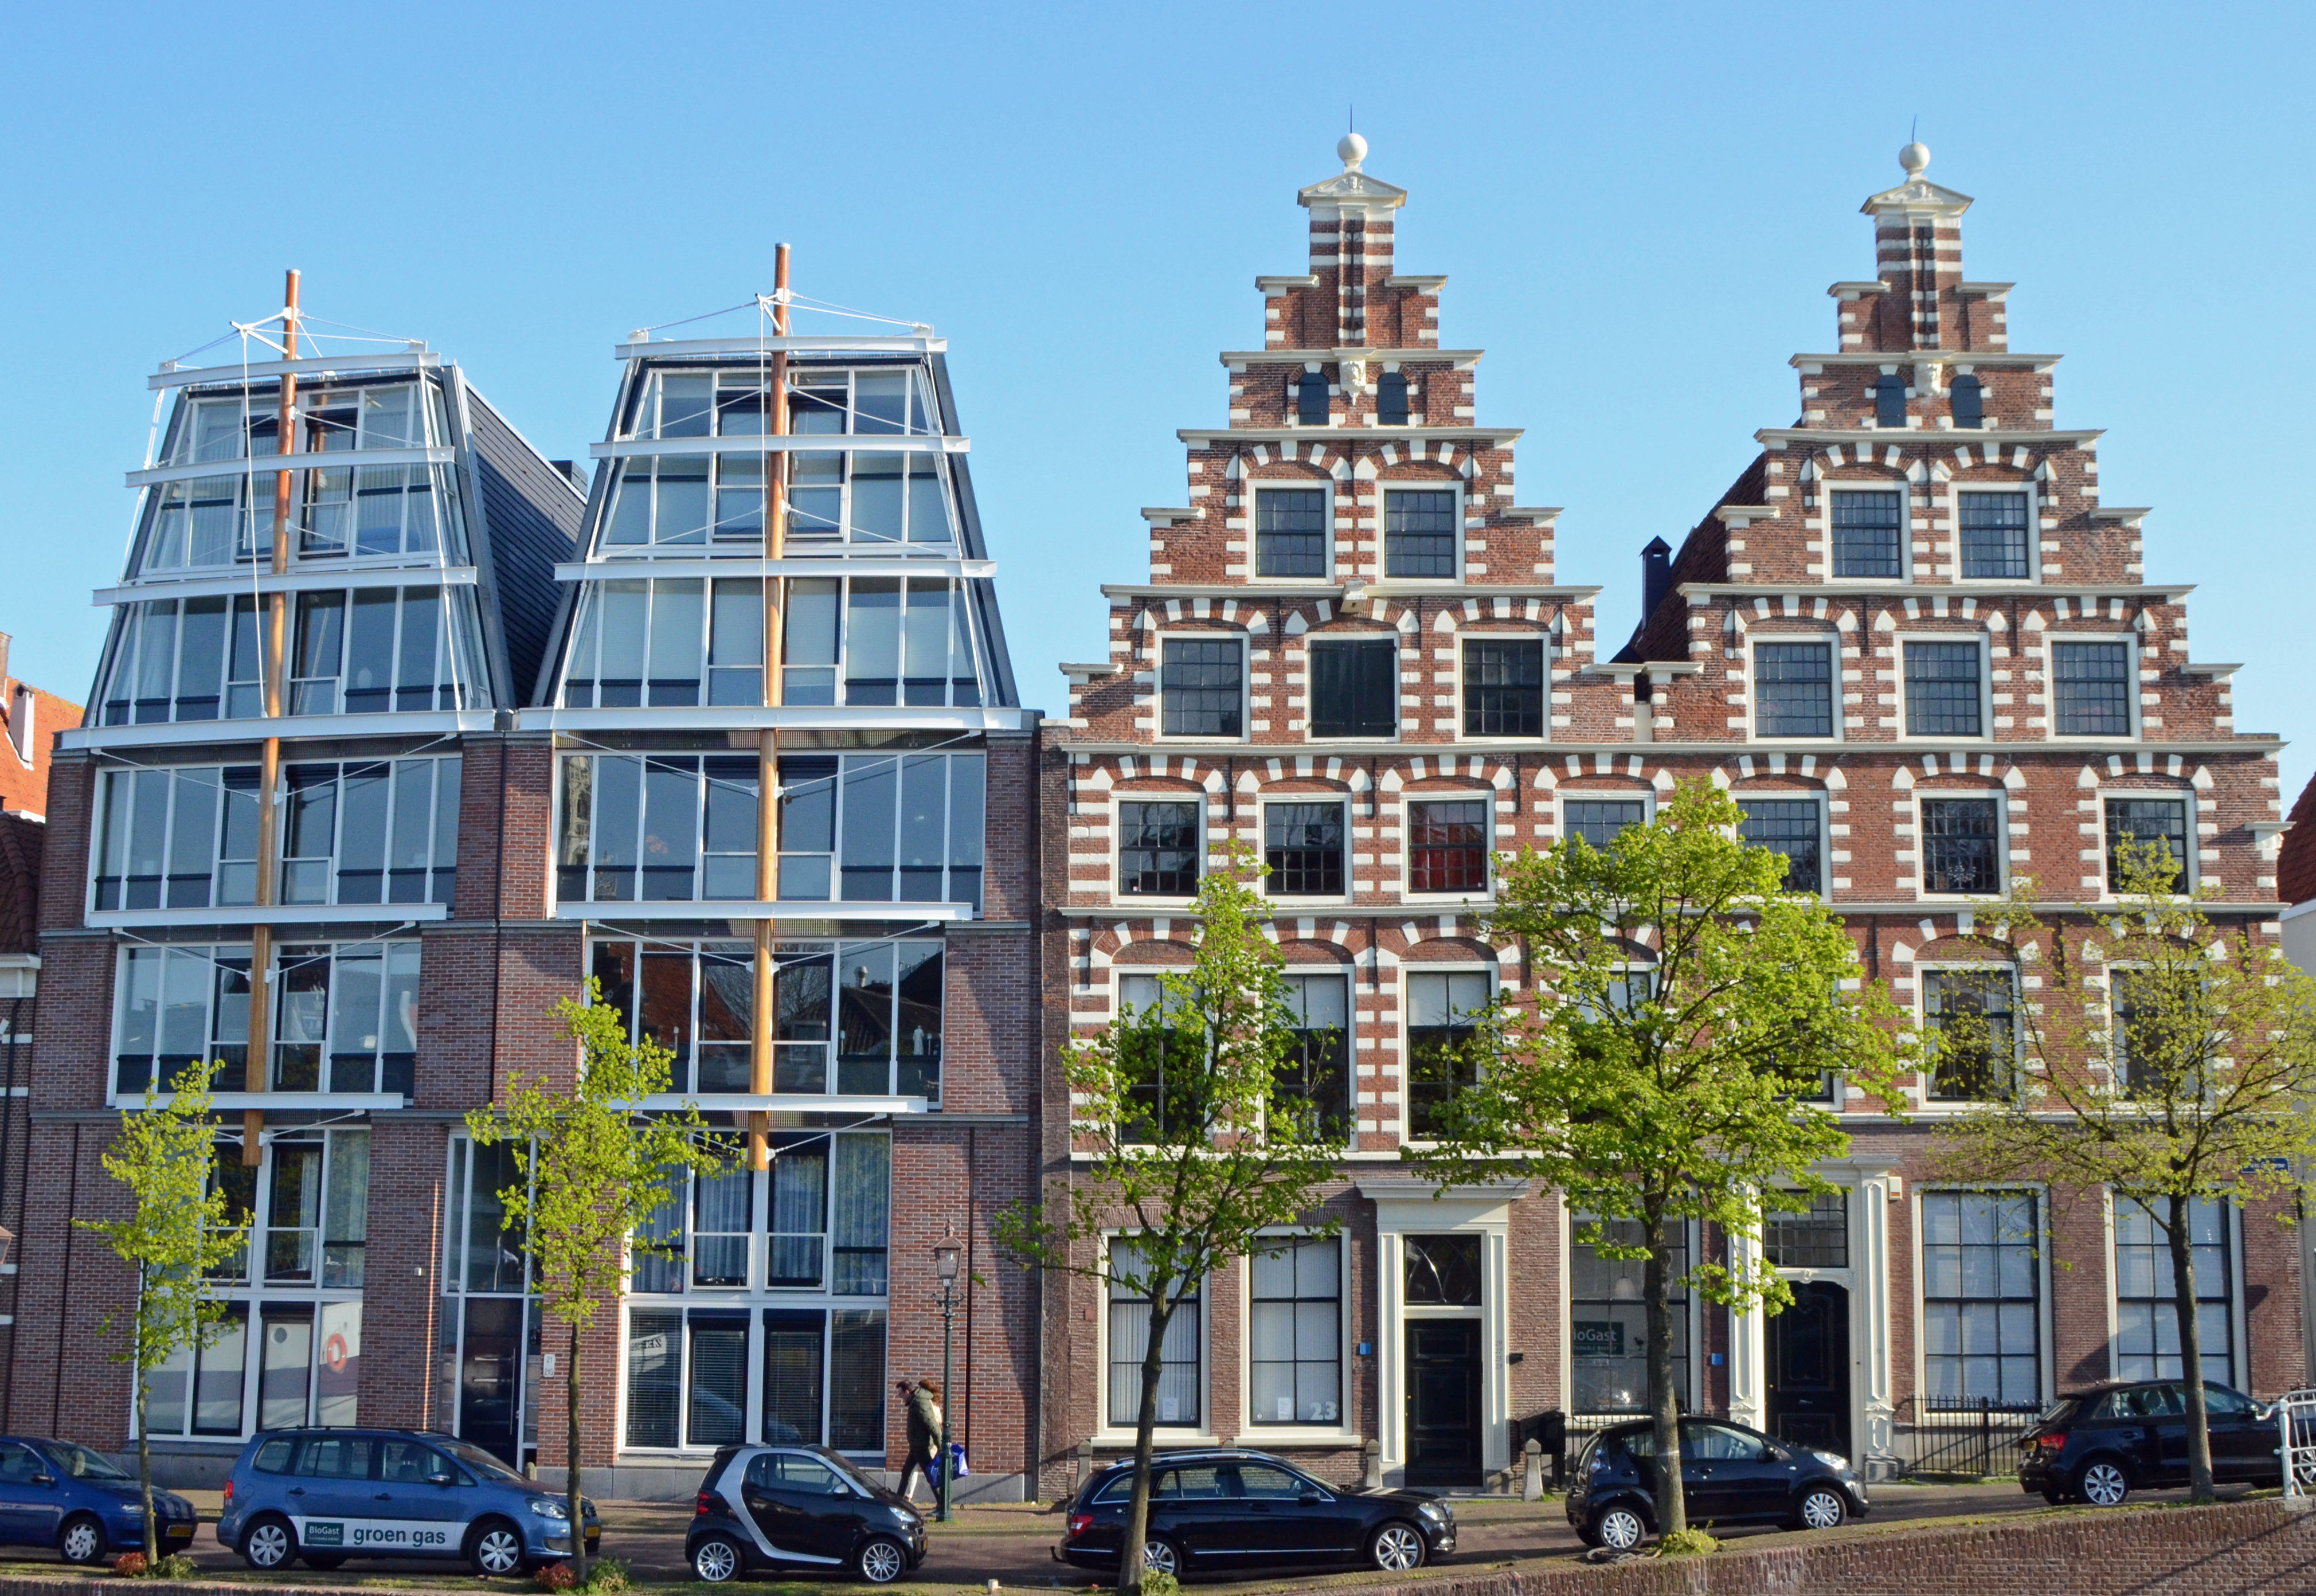 Haarlem houses